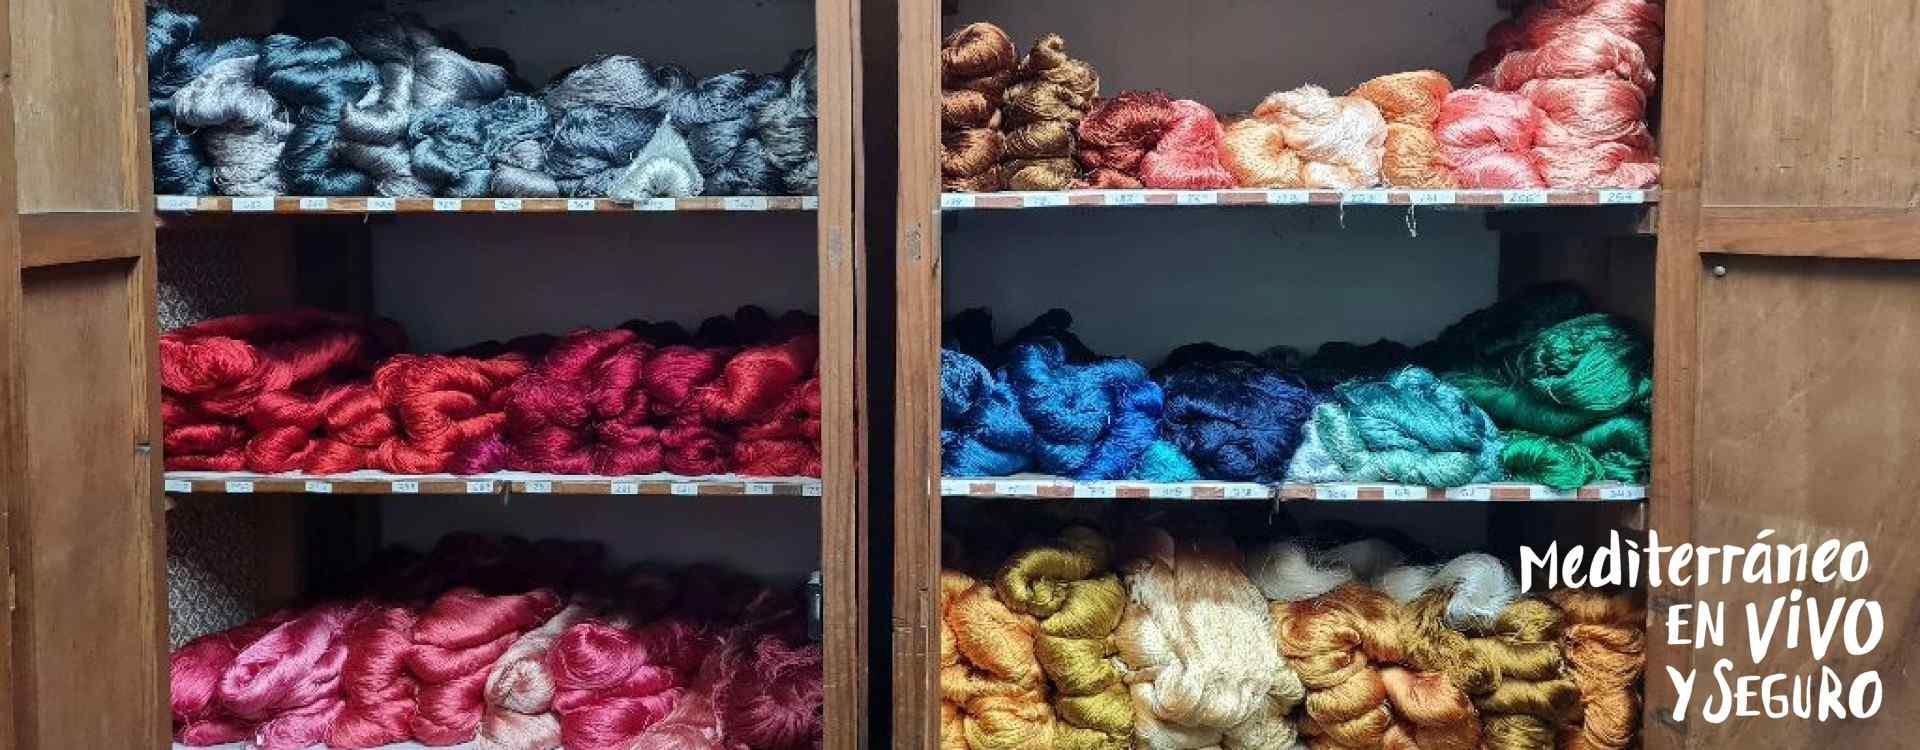 Imagen de hilos de seda de diferentes colores